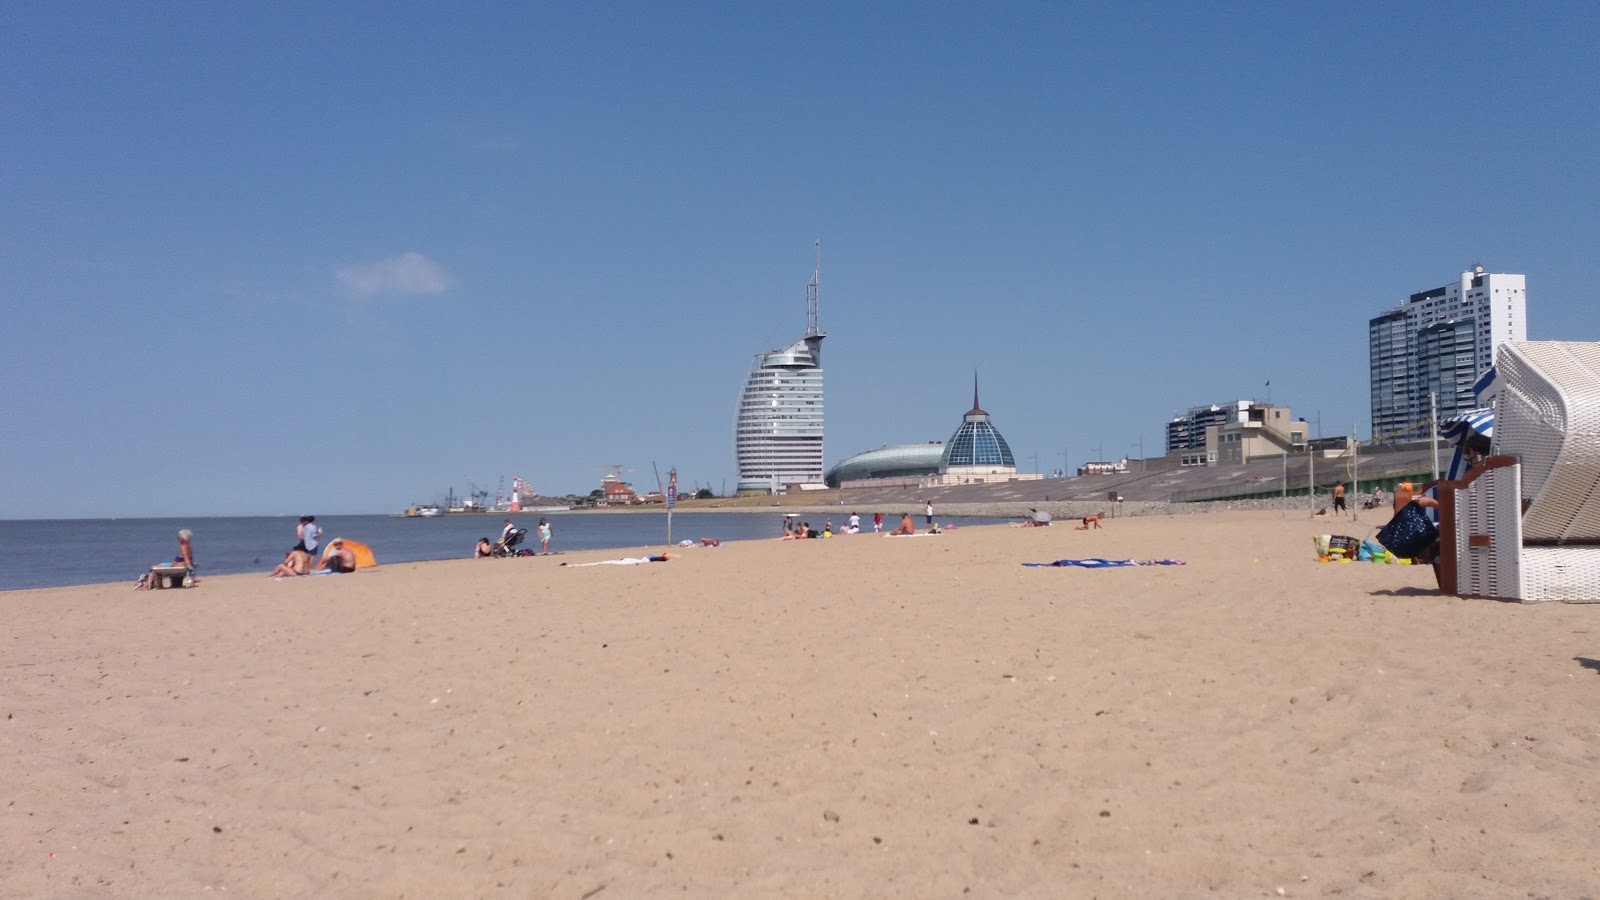 Fotografie cu Plaja Bremerhaven (Plaja Weser) cu o suprafață de nisip strălucitor